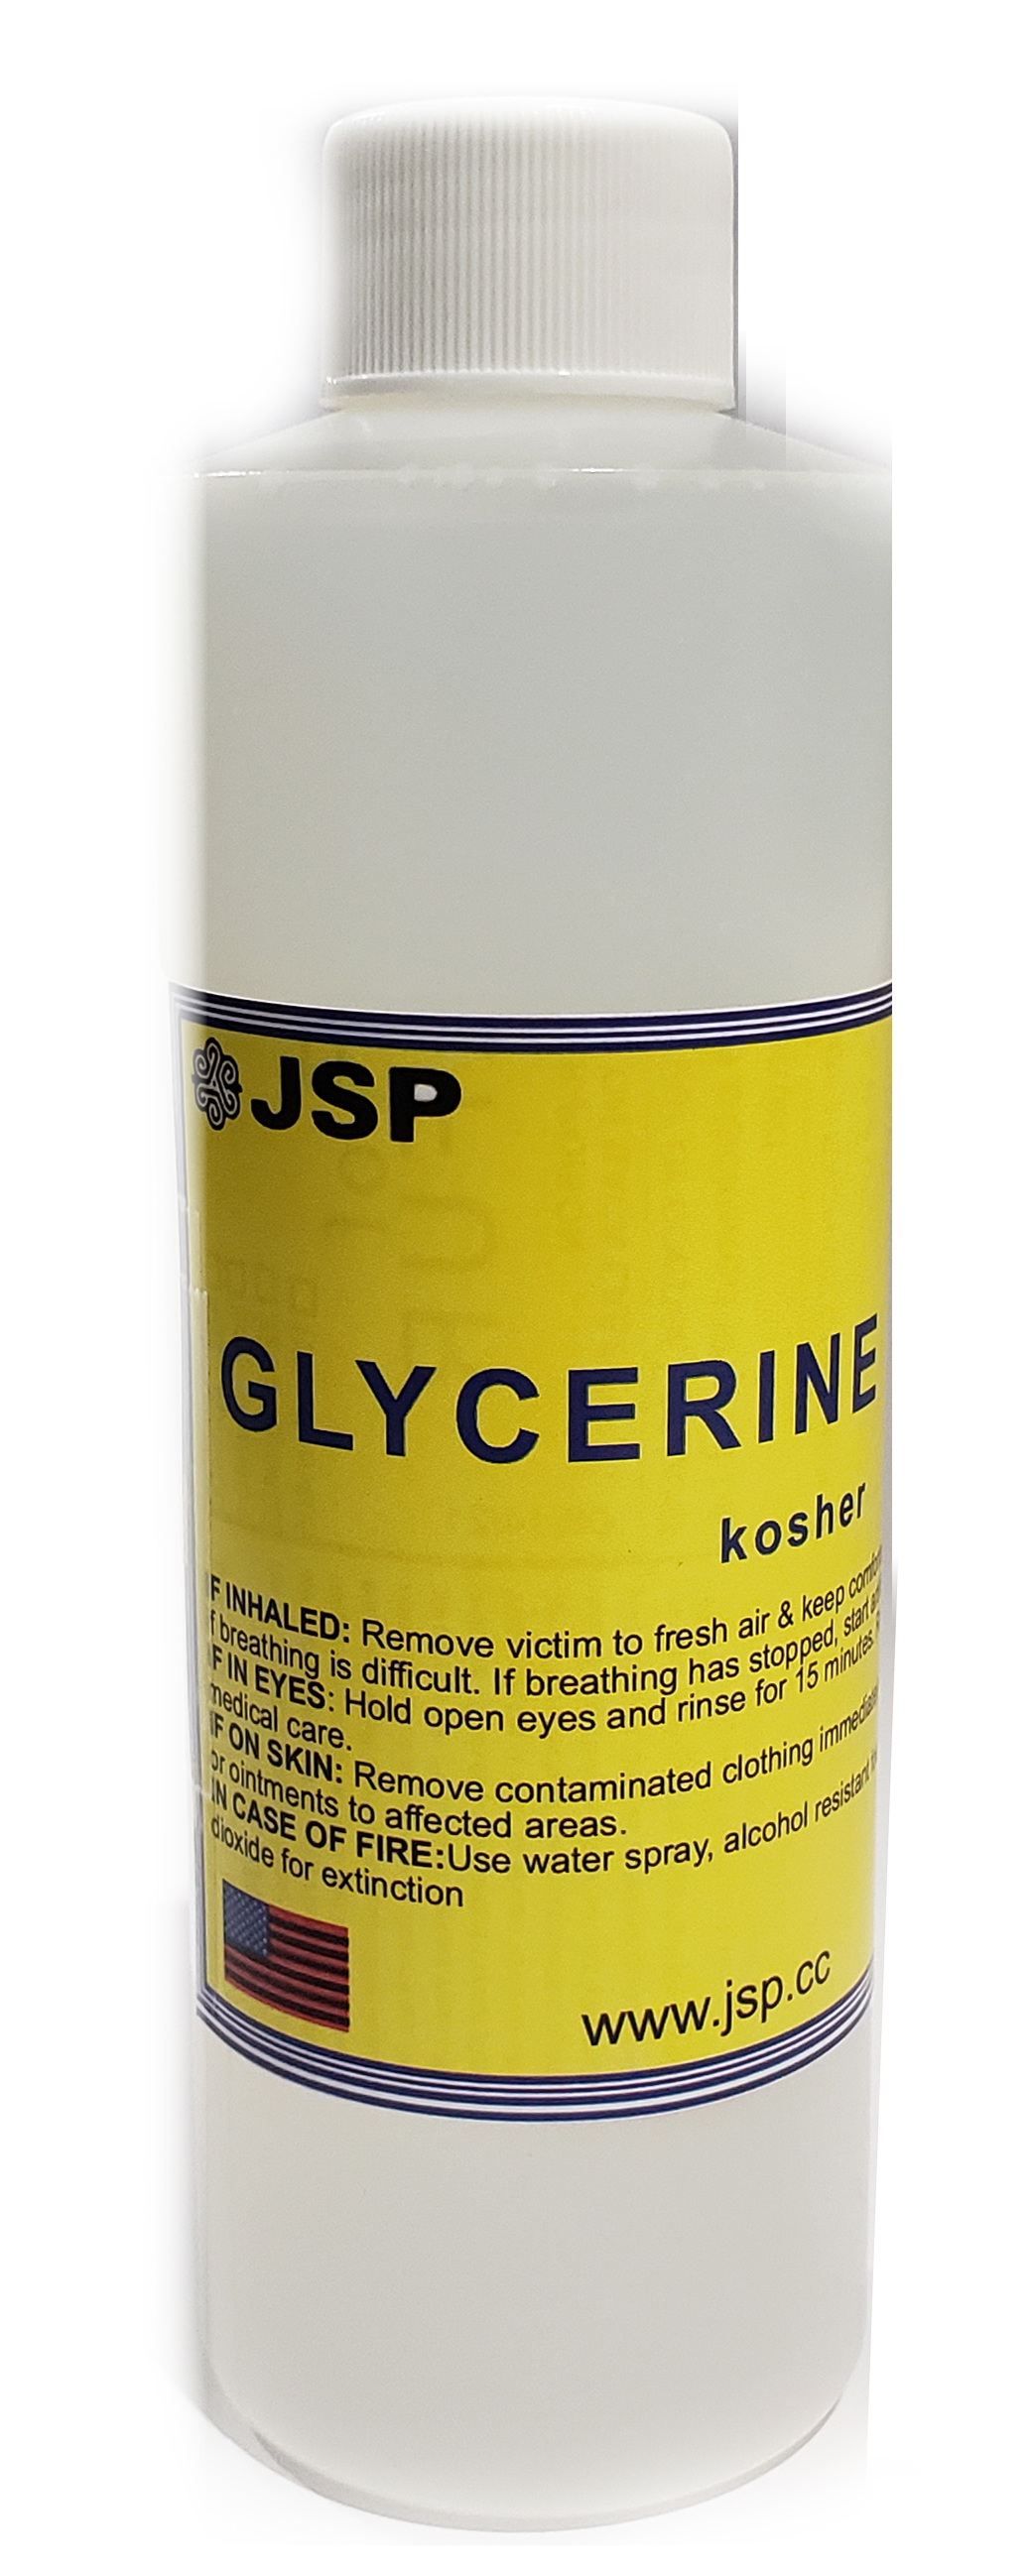 GLYCERINE/GLYCEROL 99.7% 8 oz